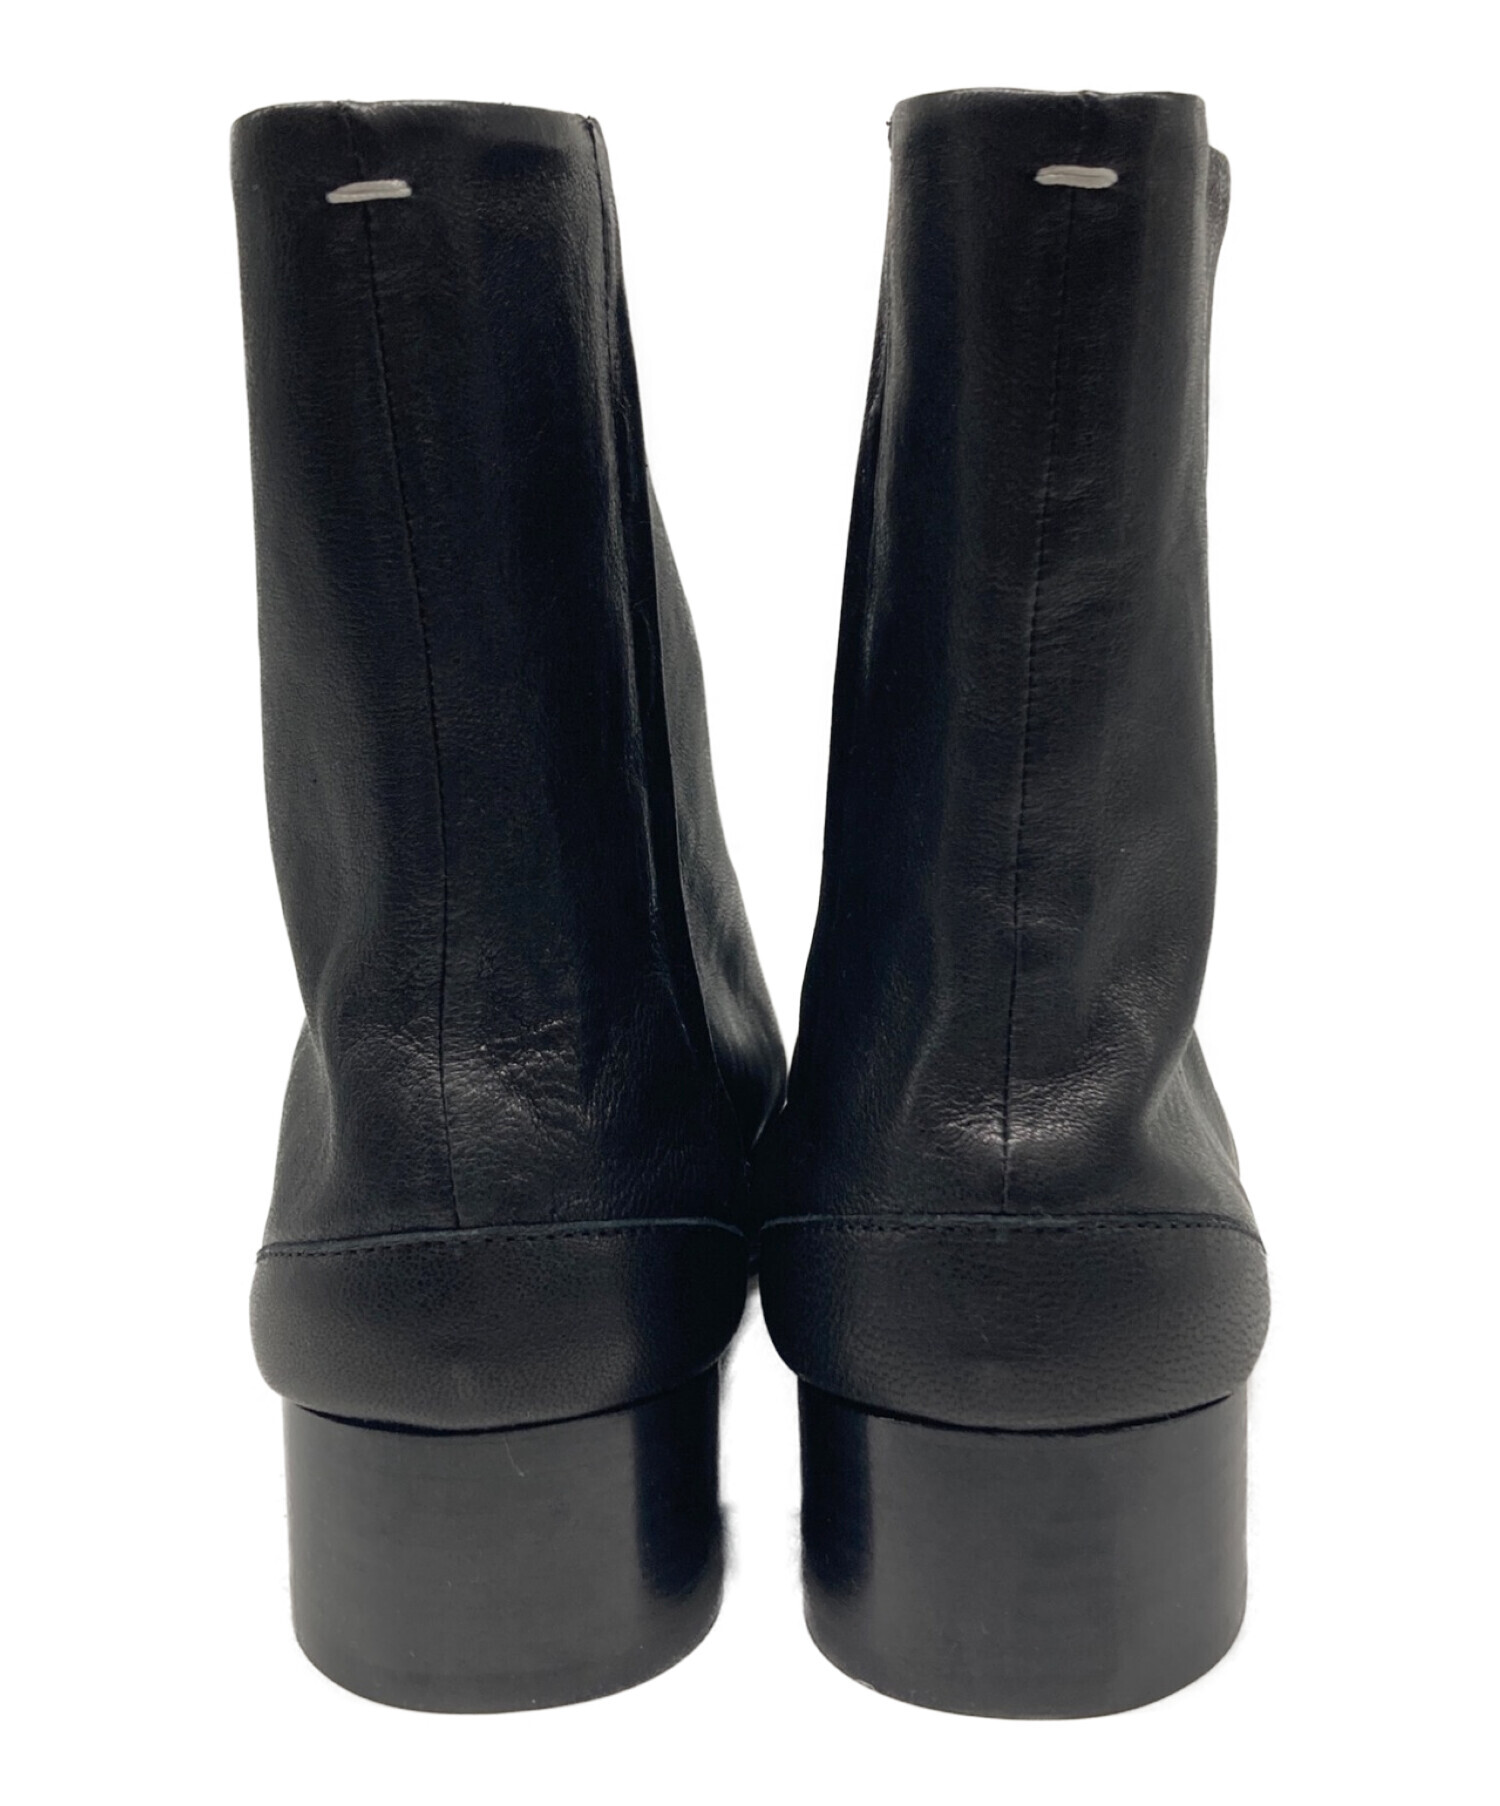 Maison Margiela (メゾンマルジェラ) TABI 足袋ブーツ 3cmヒール ブラック サイズ:36 1/2 未使用品